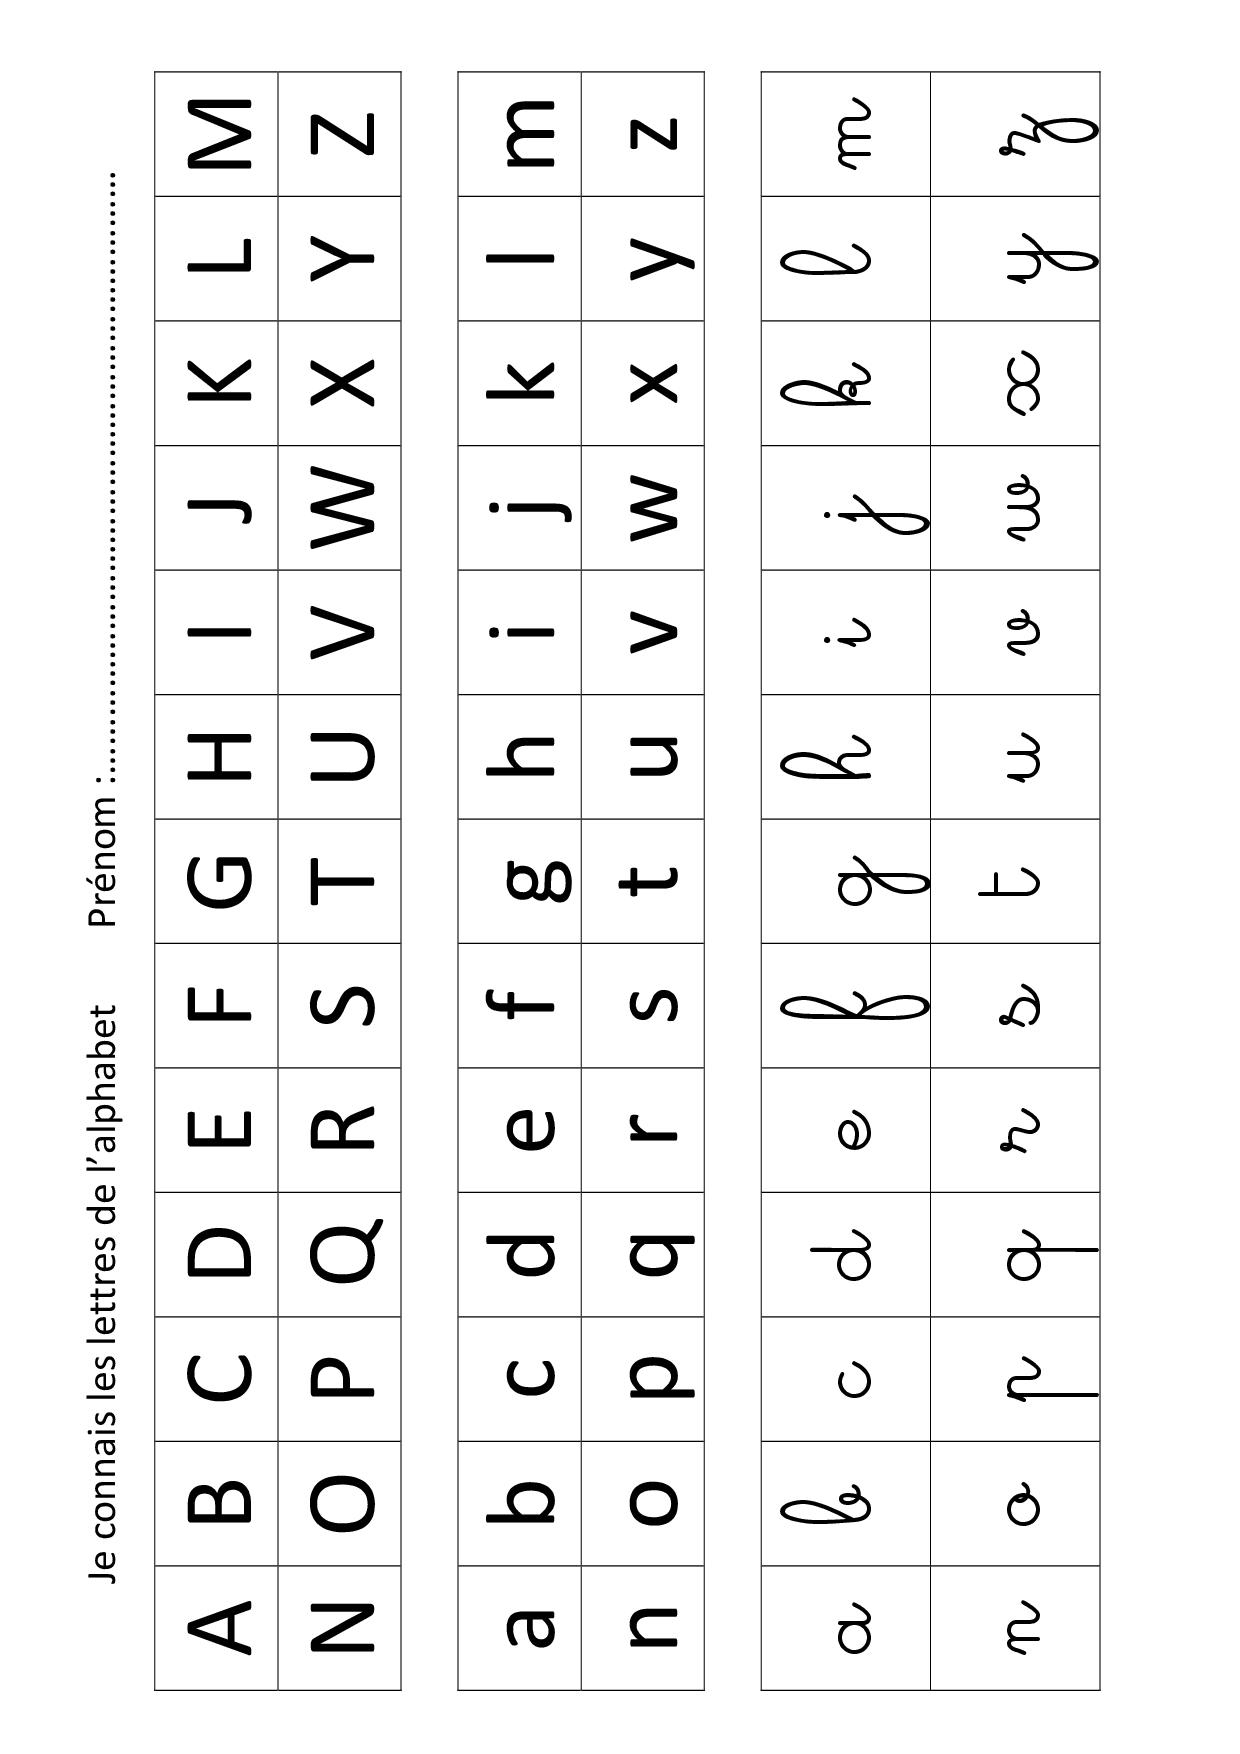 Apprendre Les Lettres De L&amp;#039;alphabet Avec Leap Frog - La intérieur Apprendre Les Lettres Maternelle 